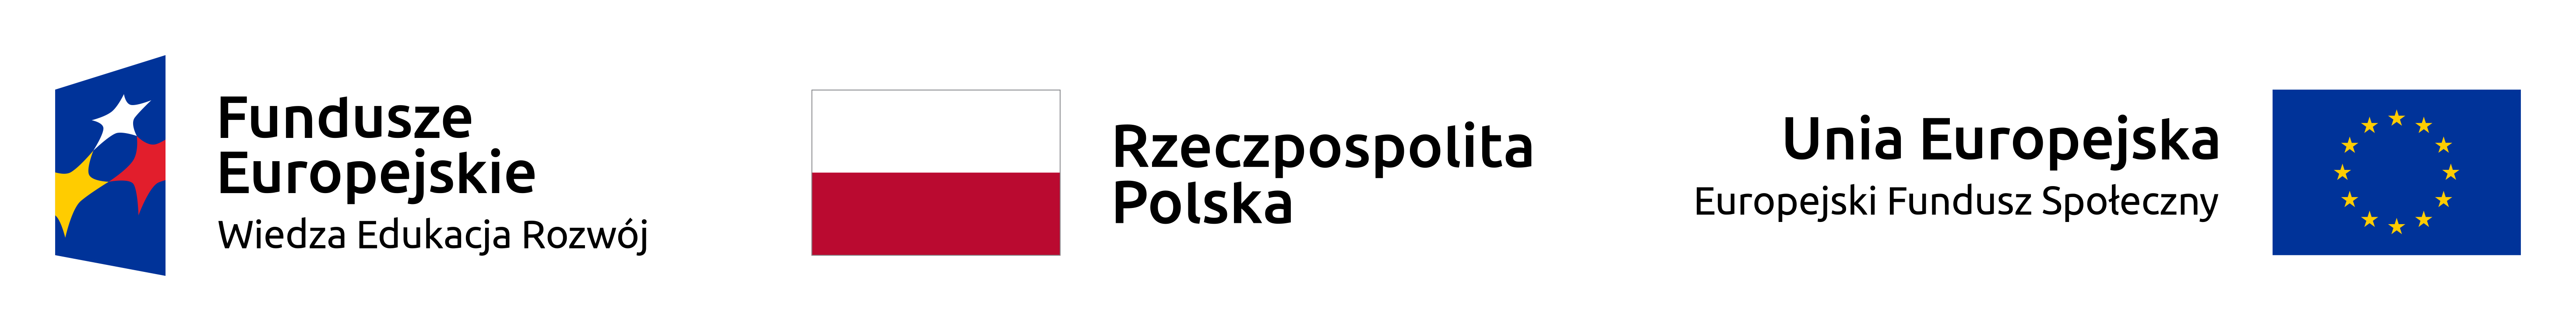 Banner od lewej, niebieska flaga z trzema gwiuazdkamia w kolorach białym, żółtym i czerwonym, napis Fundeusze Europejskie, niżej Wiedza Edukacja Rozwój, śodek flaga Polski biało-czerwona (góra, dół) napis Rzeczpospolita Polska, napis Unia Europejska, niżej Europejski Fundusz Społeczny, fla UE na niebieskim tle 12 żółtych gwiazd ułożonych w okrąg